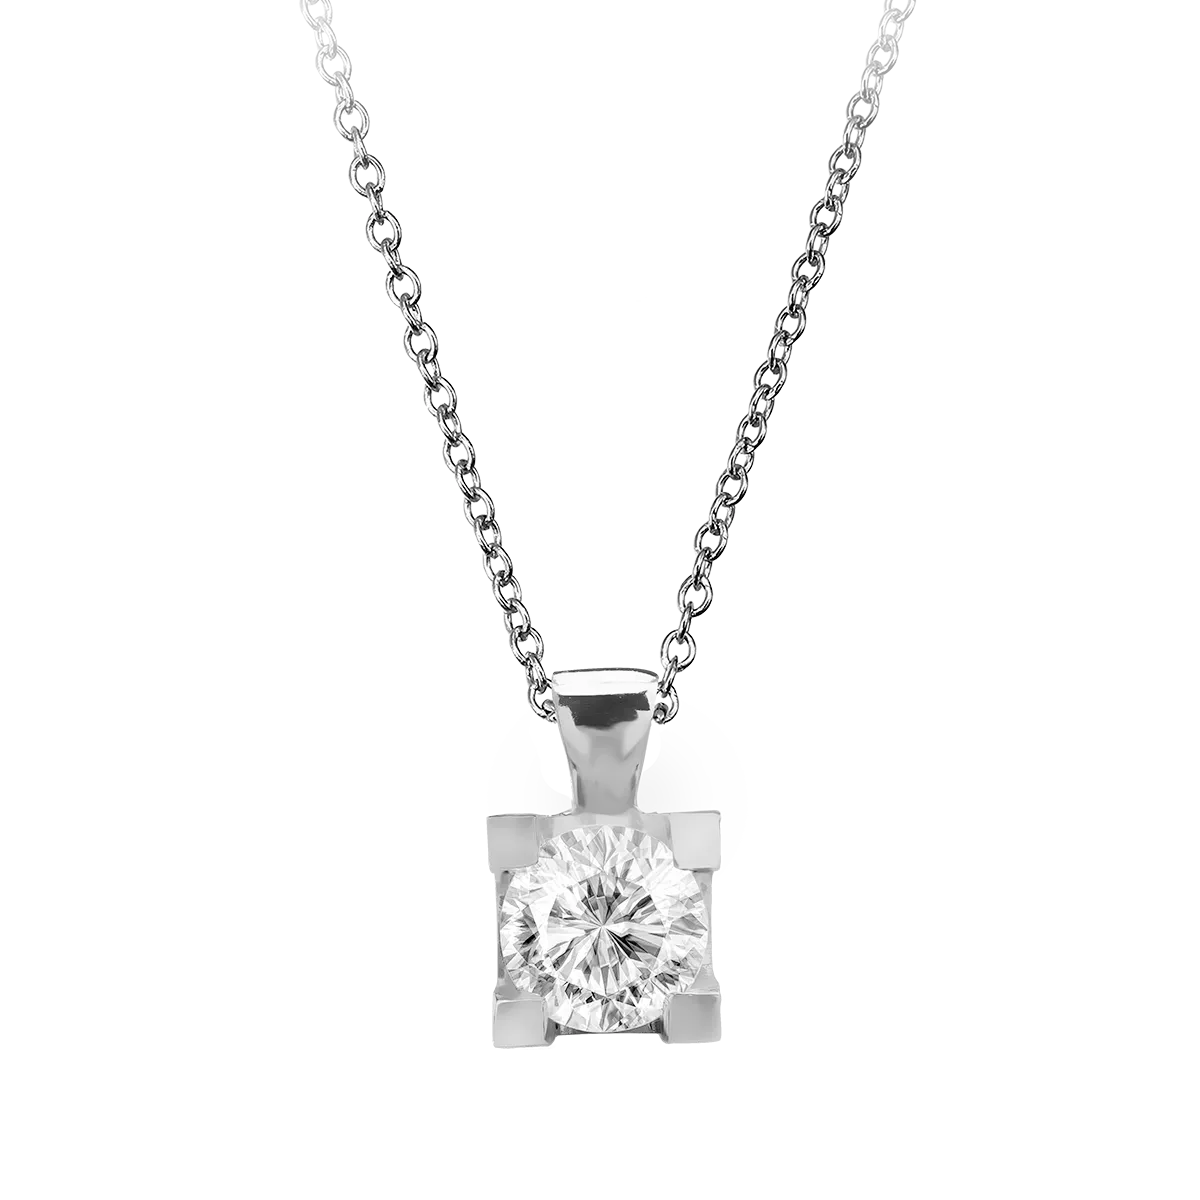 18K fehérarany medál nyaklánc 0.4ct gyémánttal